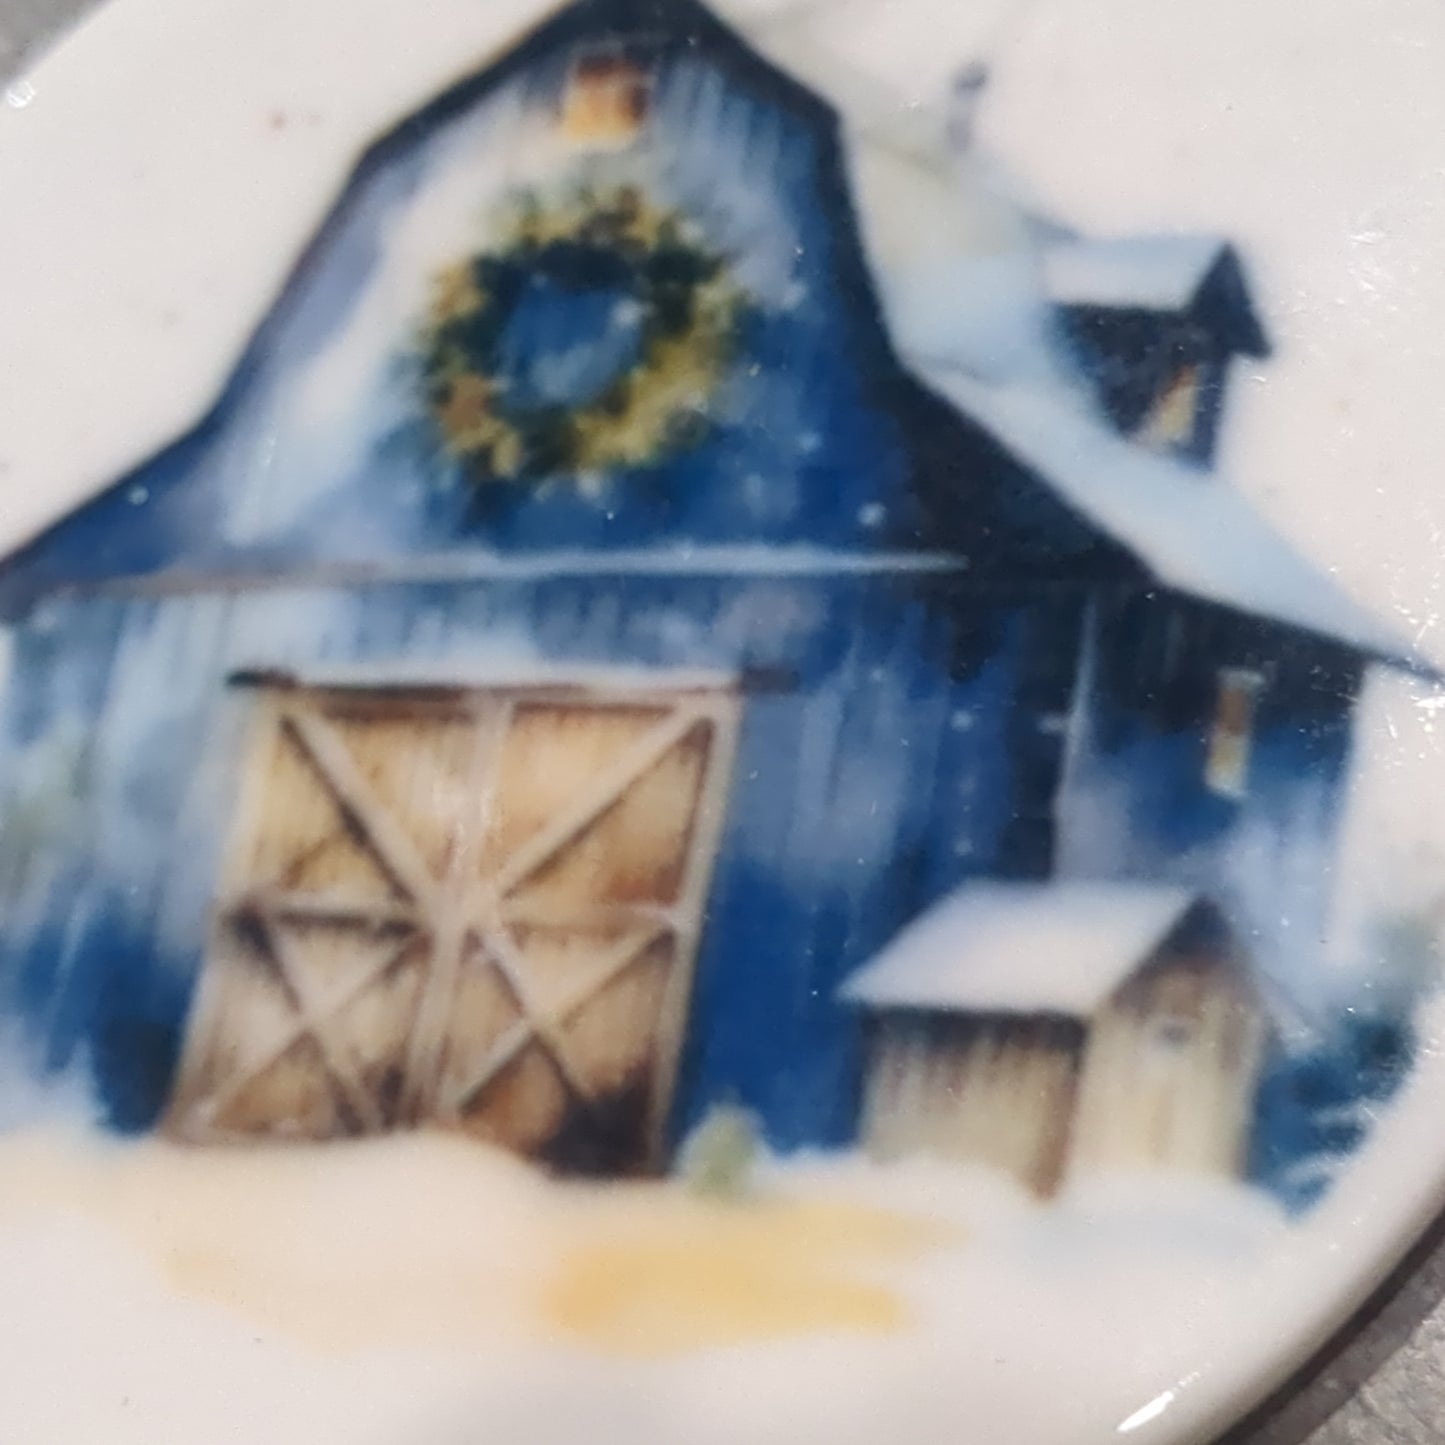 Ceramic ornament blue barn